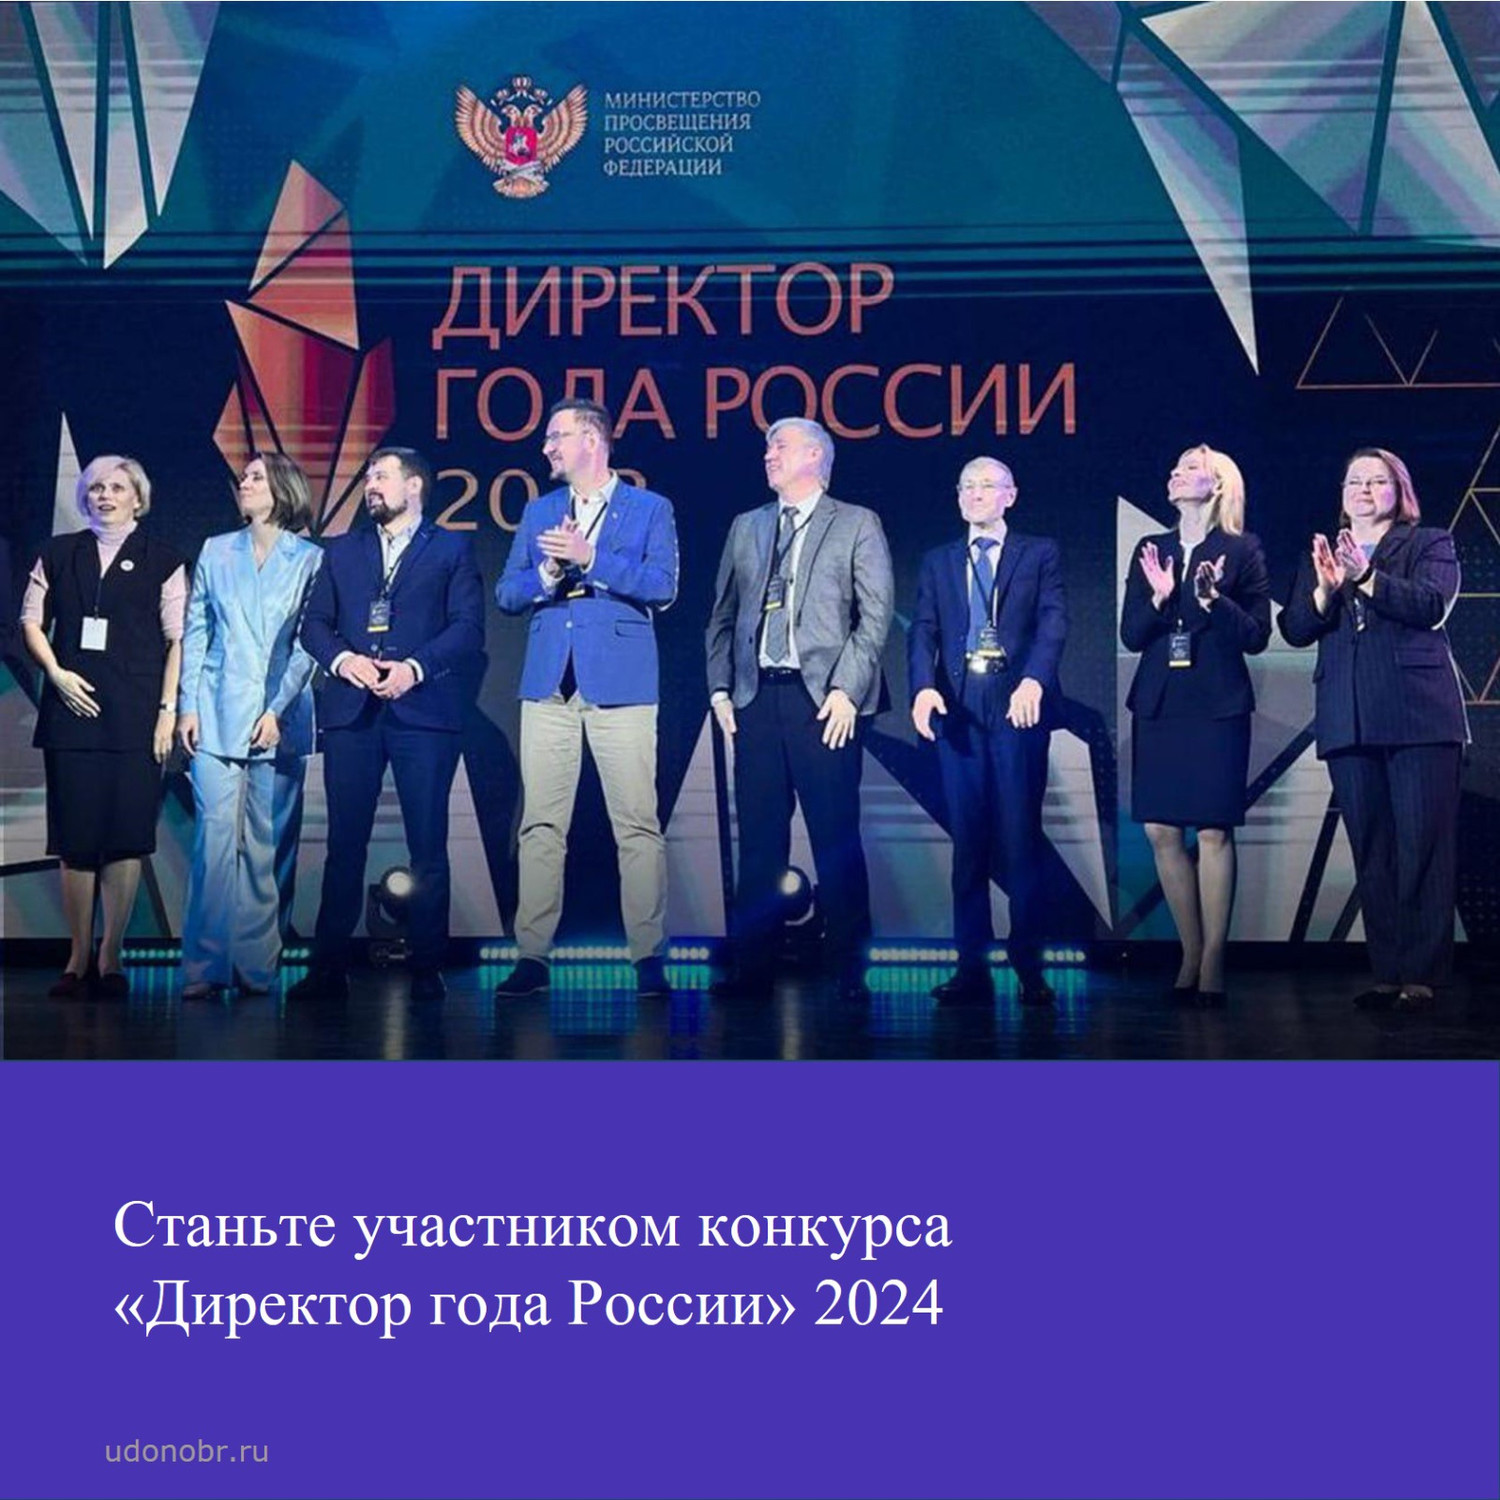 Станьте участником конкурса «Директор года России» 2024